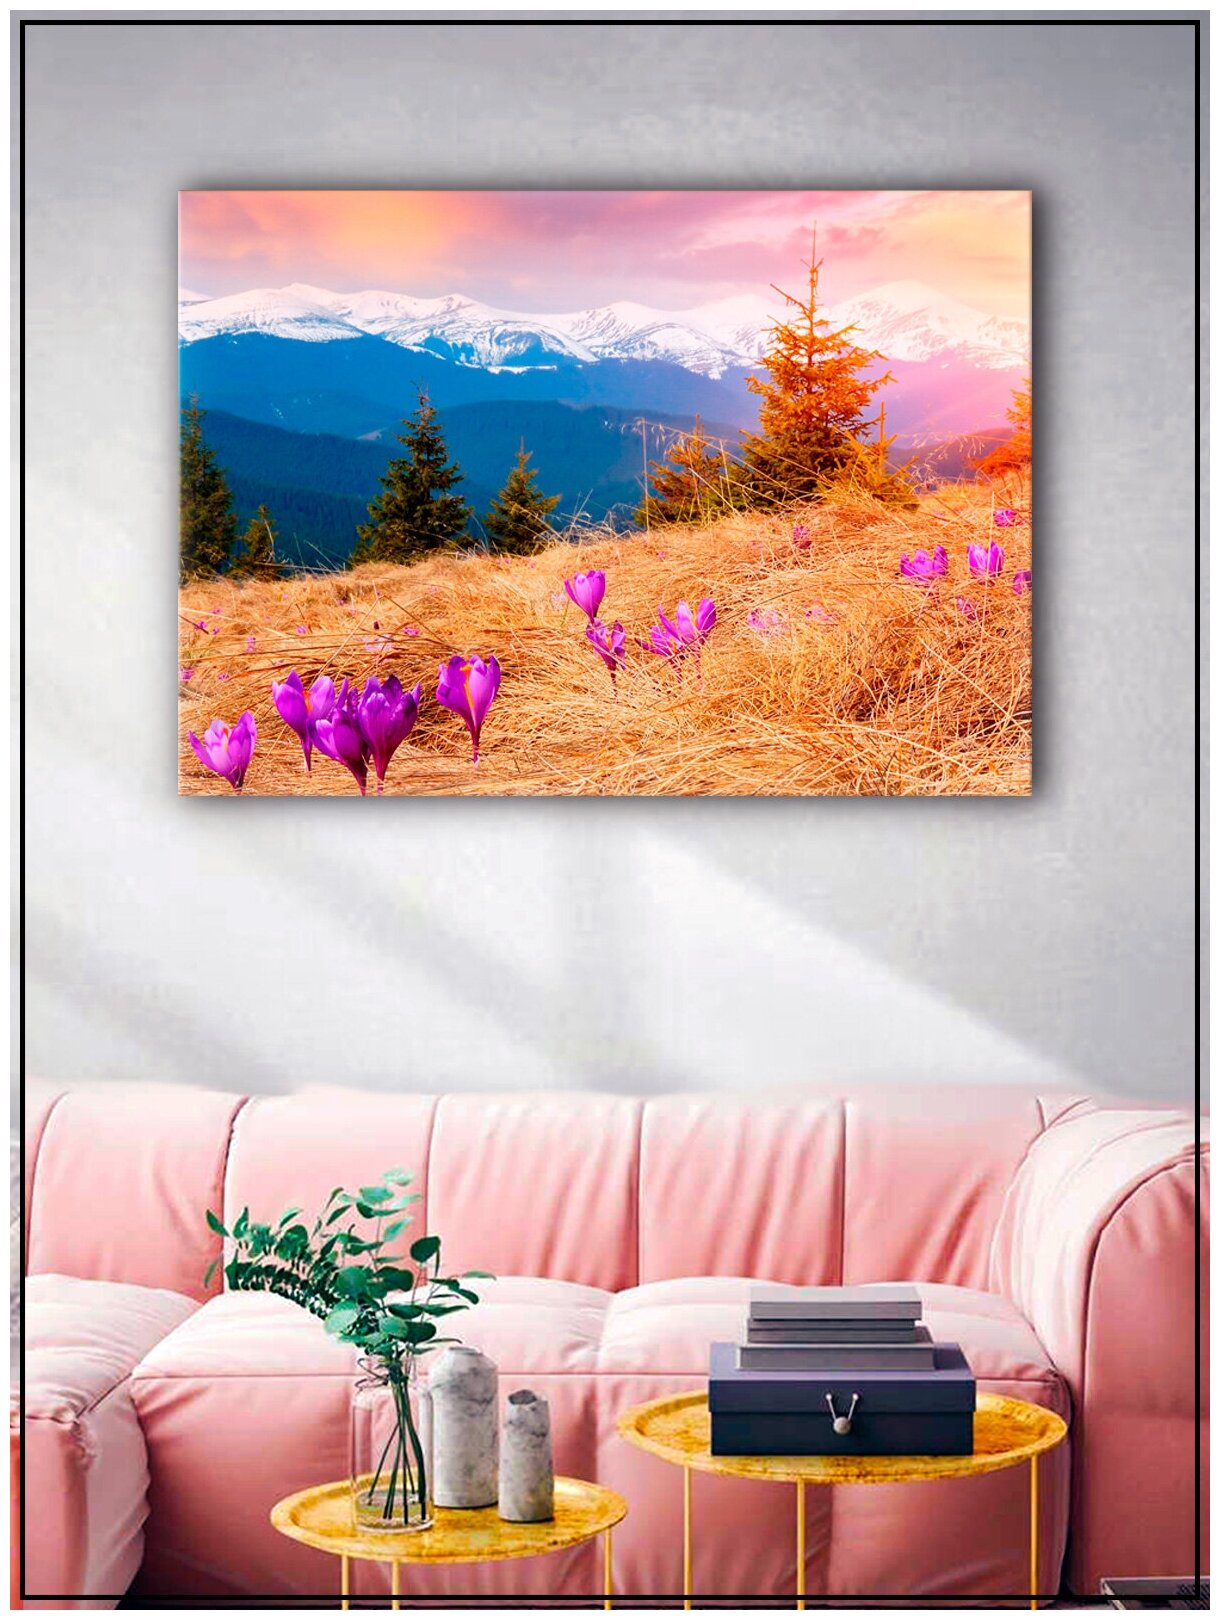 Картина для интерьера на натуральном хлопковом холсте "Горный пейзаж", 30*40см, холст на подрамнике, картина в подарок для дома